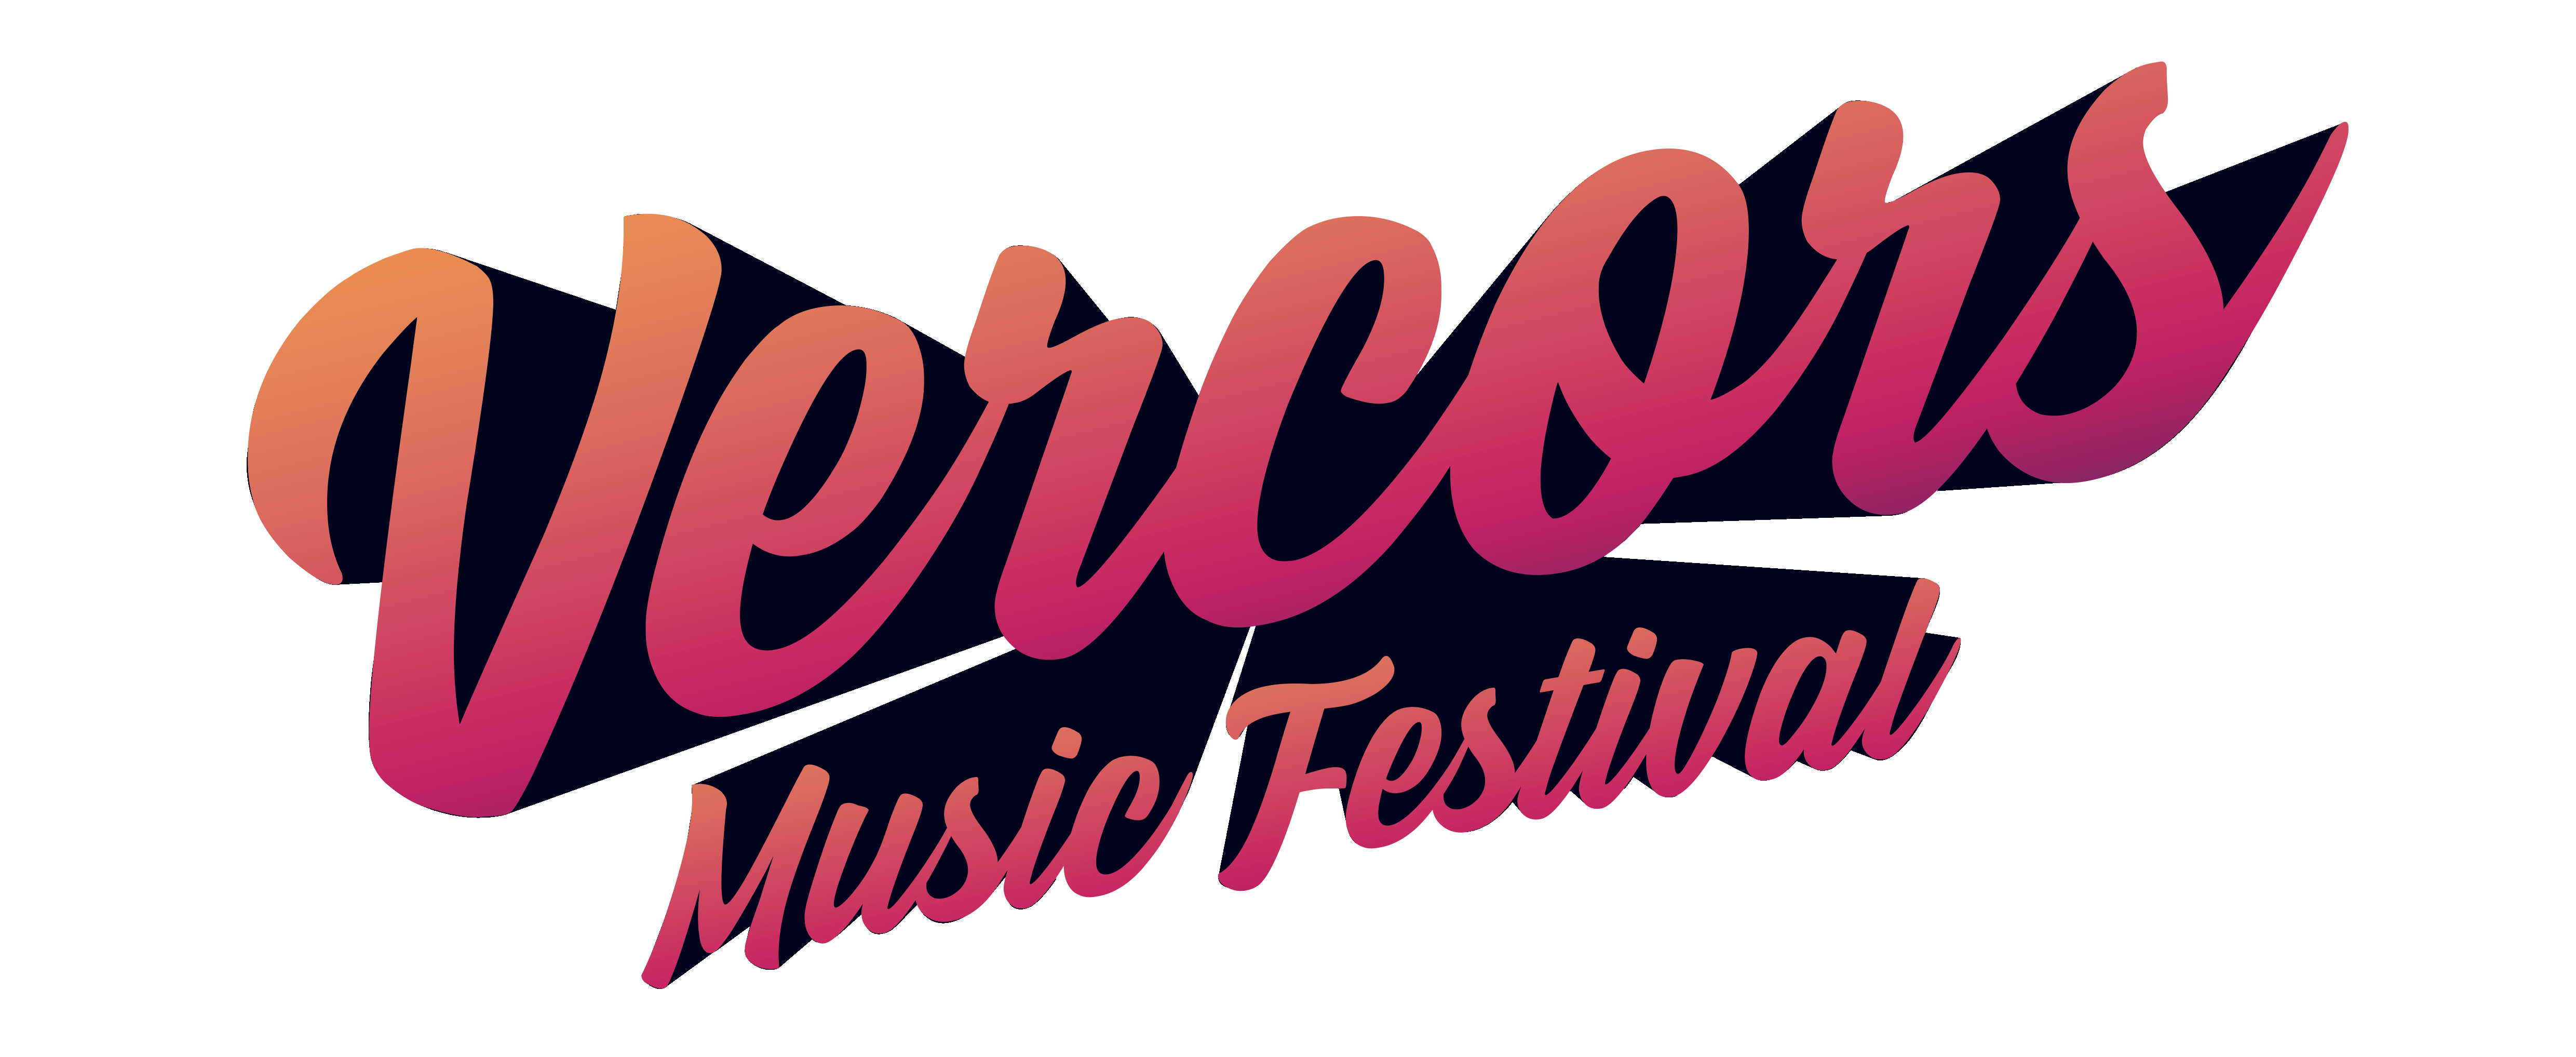 Vercors Music Festival